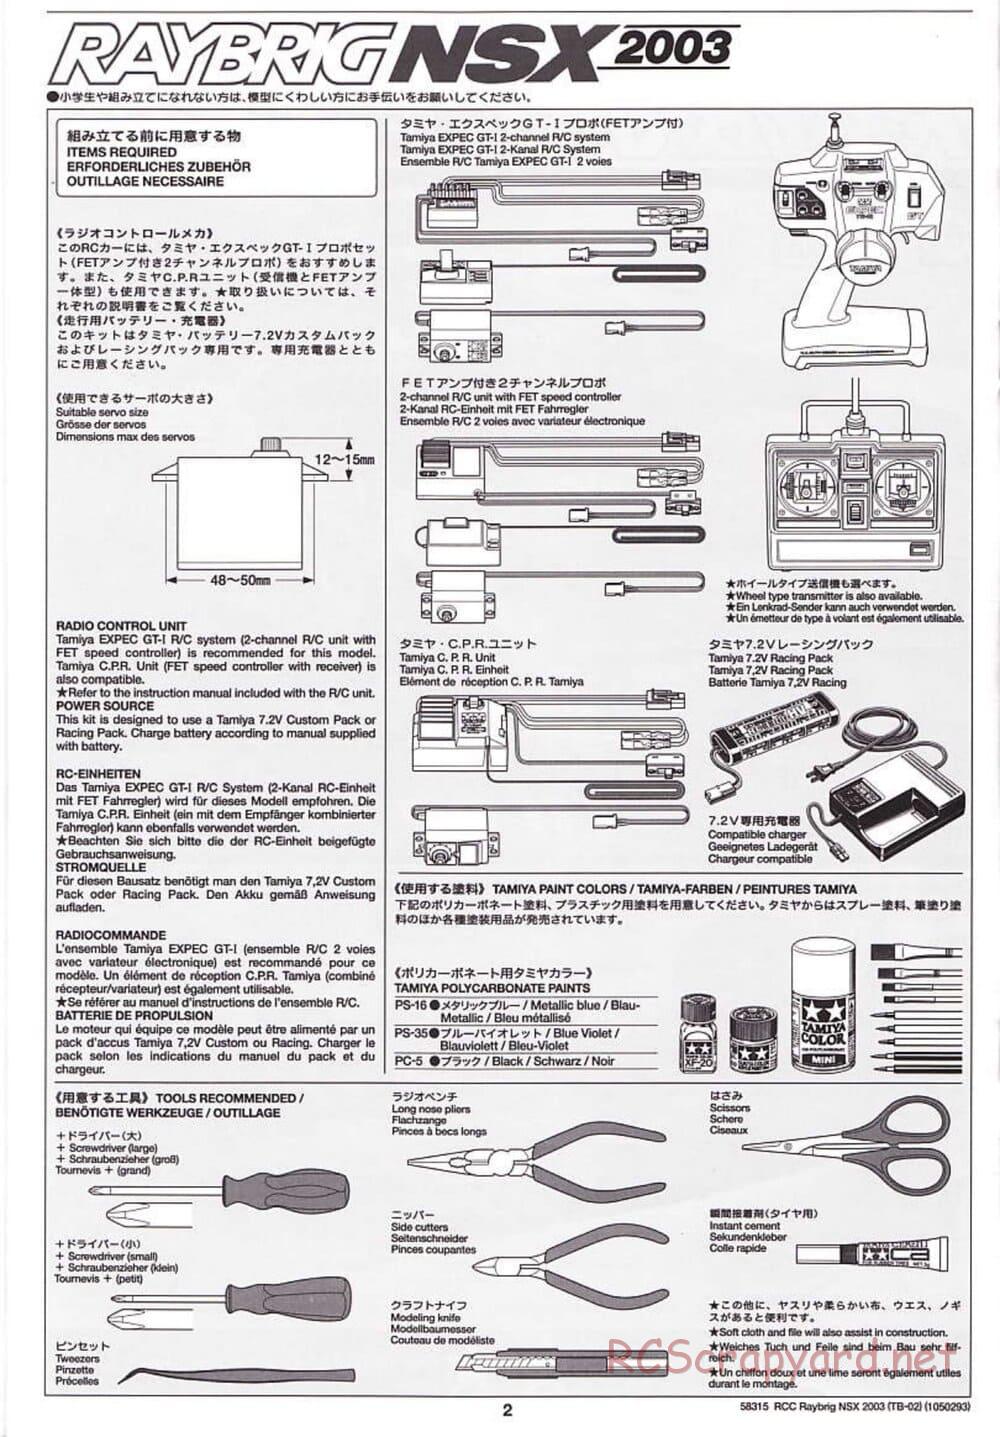 Tamiya - Raybrig NSX 2003 - TB-02 Chassis - Manual - Page 2